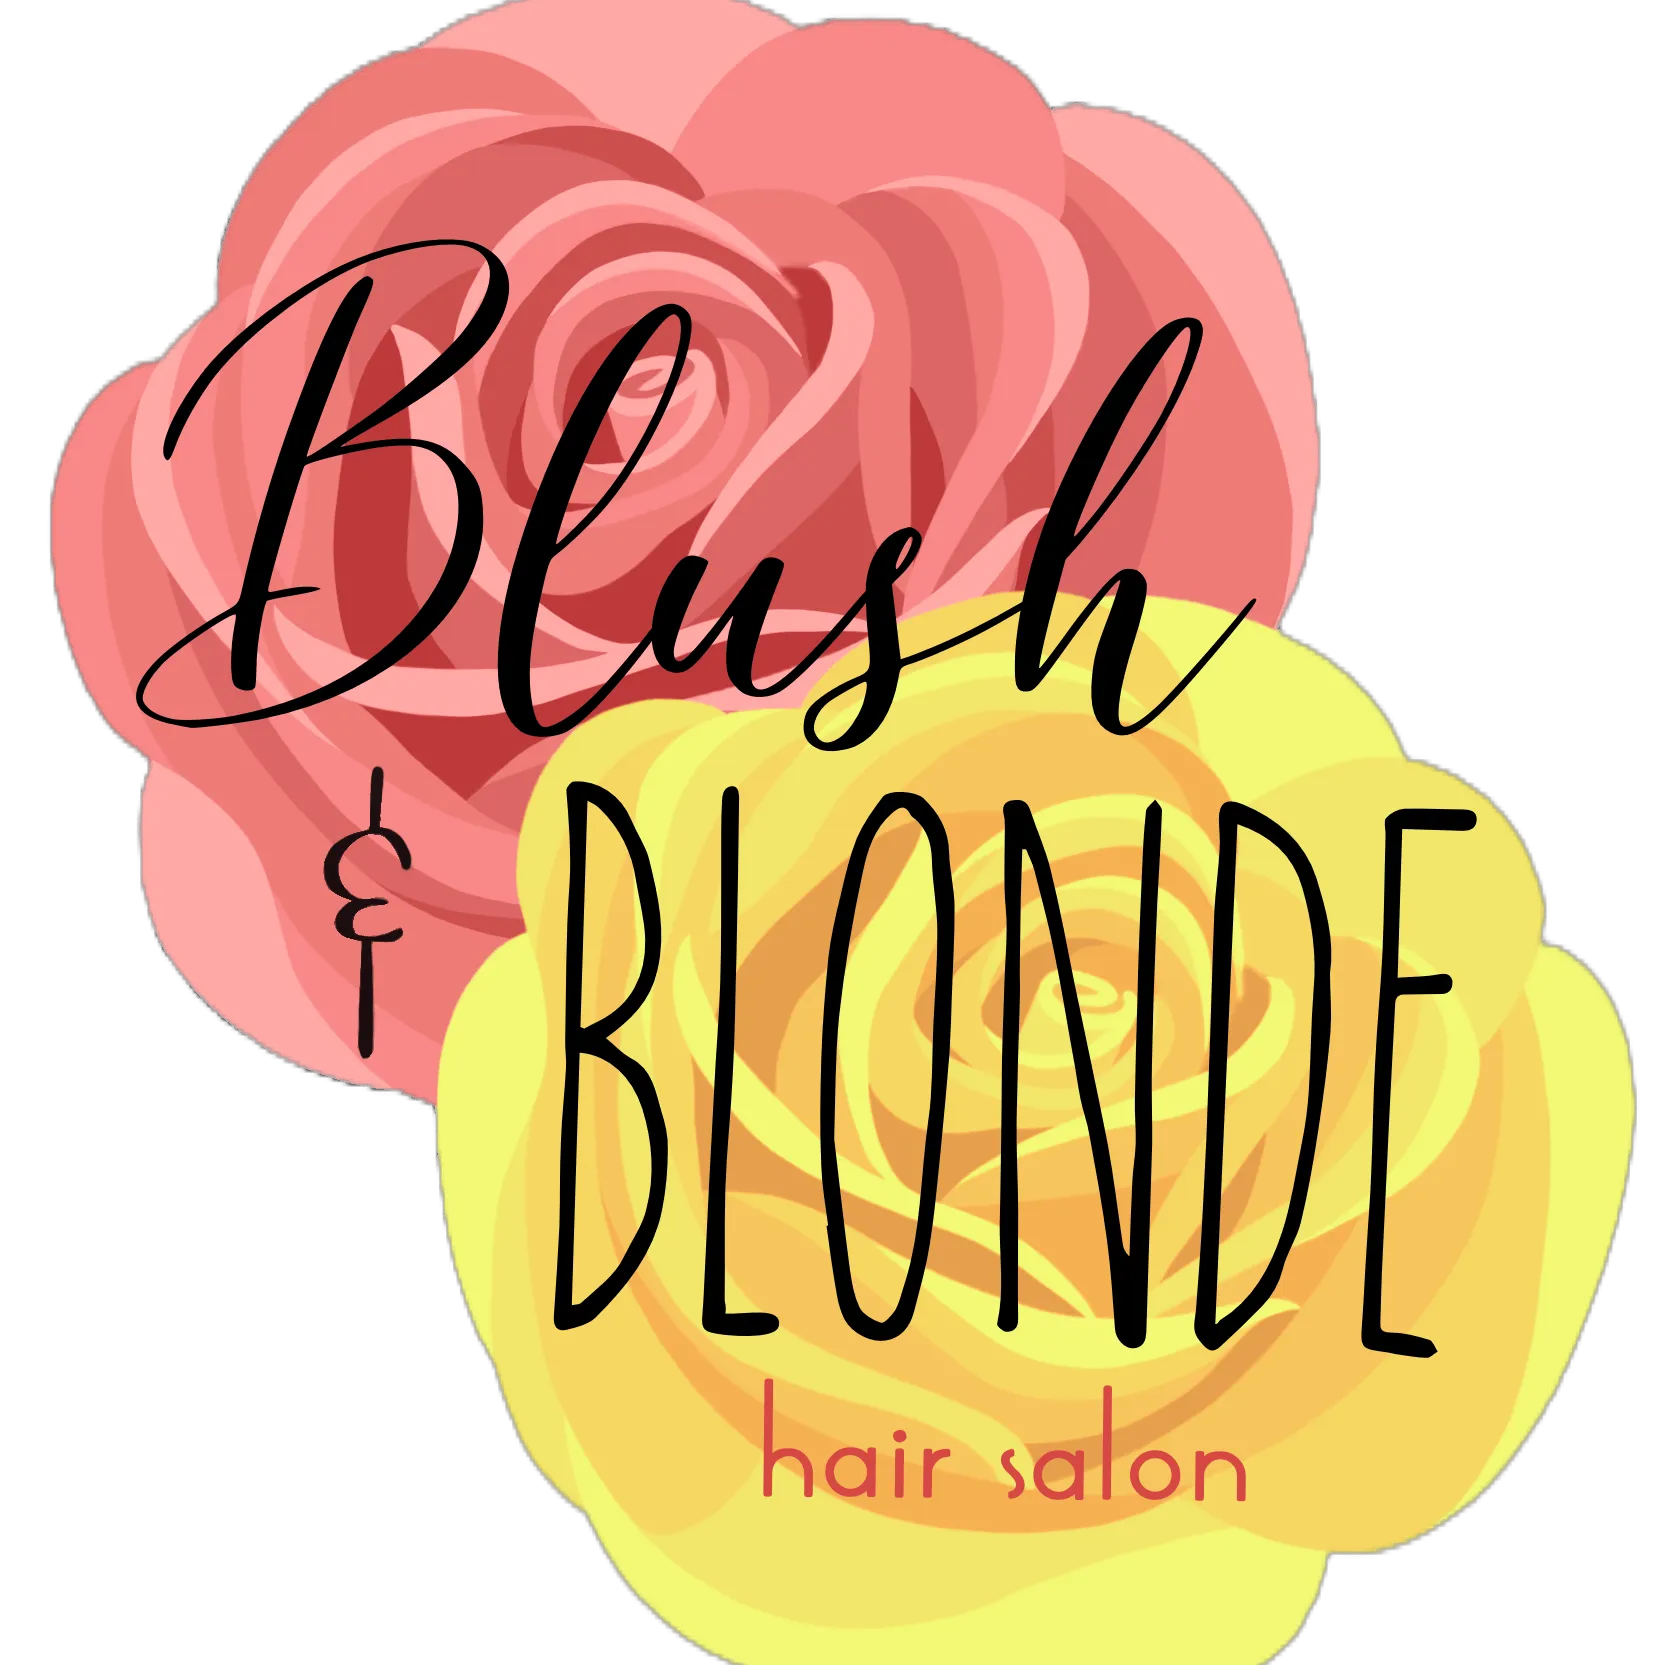 A logo for a hair salon called blush blonde